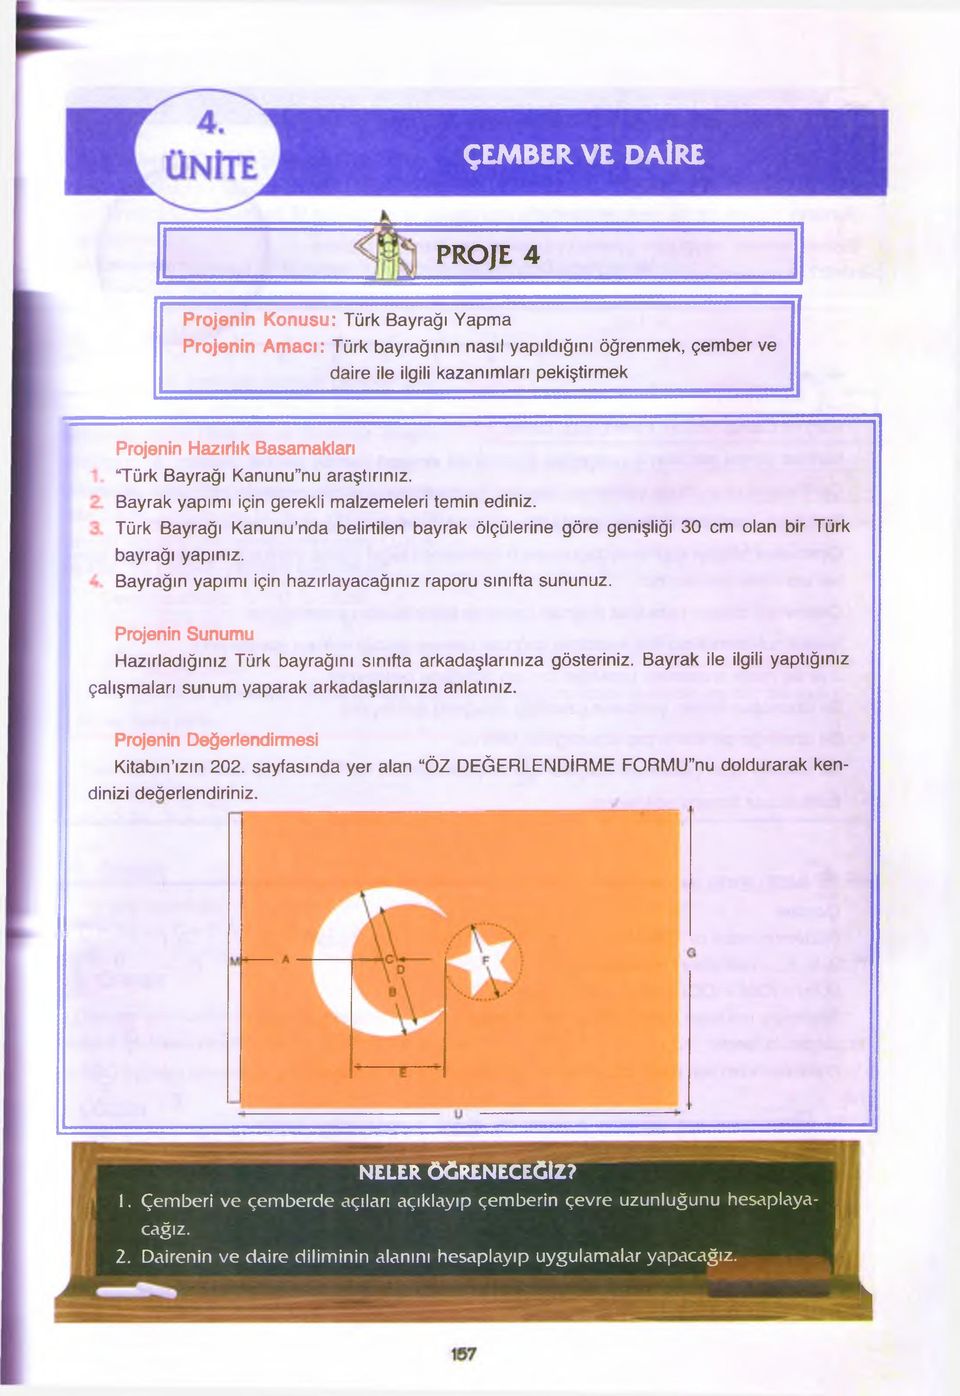 Türk Bayrağı Kanunu nda belirtilen bayrak ölçülerine göre genişliği 30 cm olan bir Türk bayrağı yapınız. Bayrağın yapımı için hazırlayacağınız raporu sınıfta sununuz.